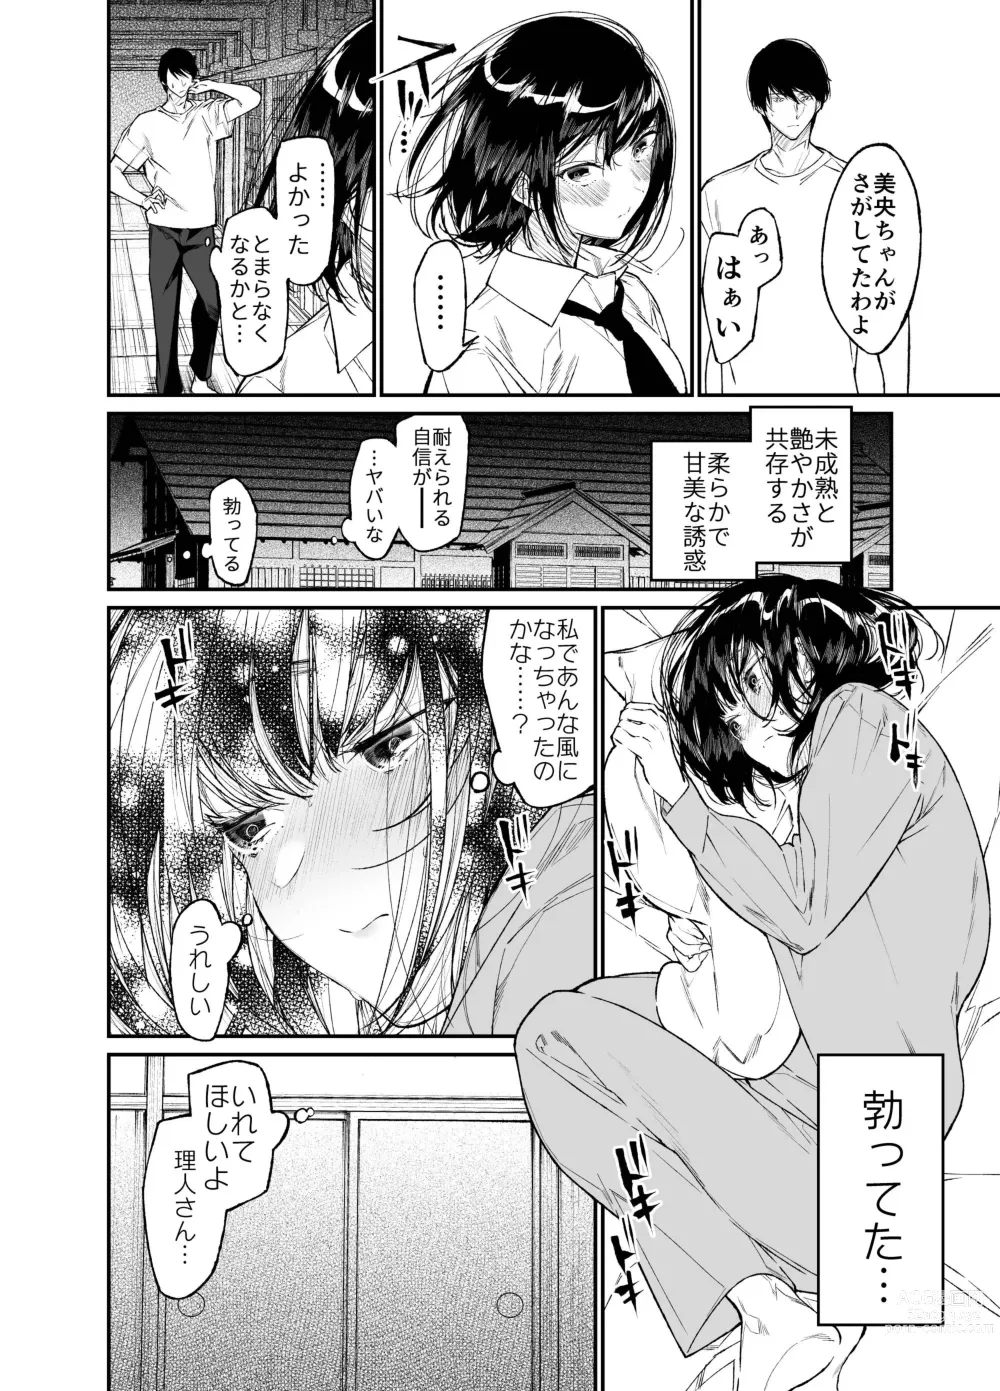 Page 16 of doujinshi Natsu, Shoujo wa Tonde, Hi ni Iru.